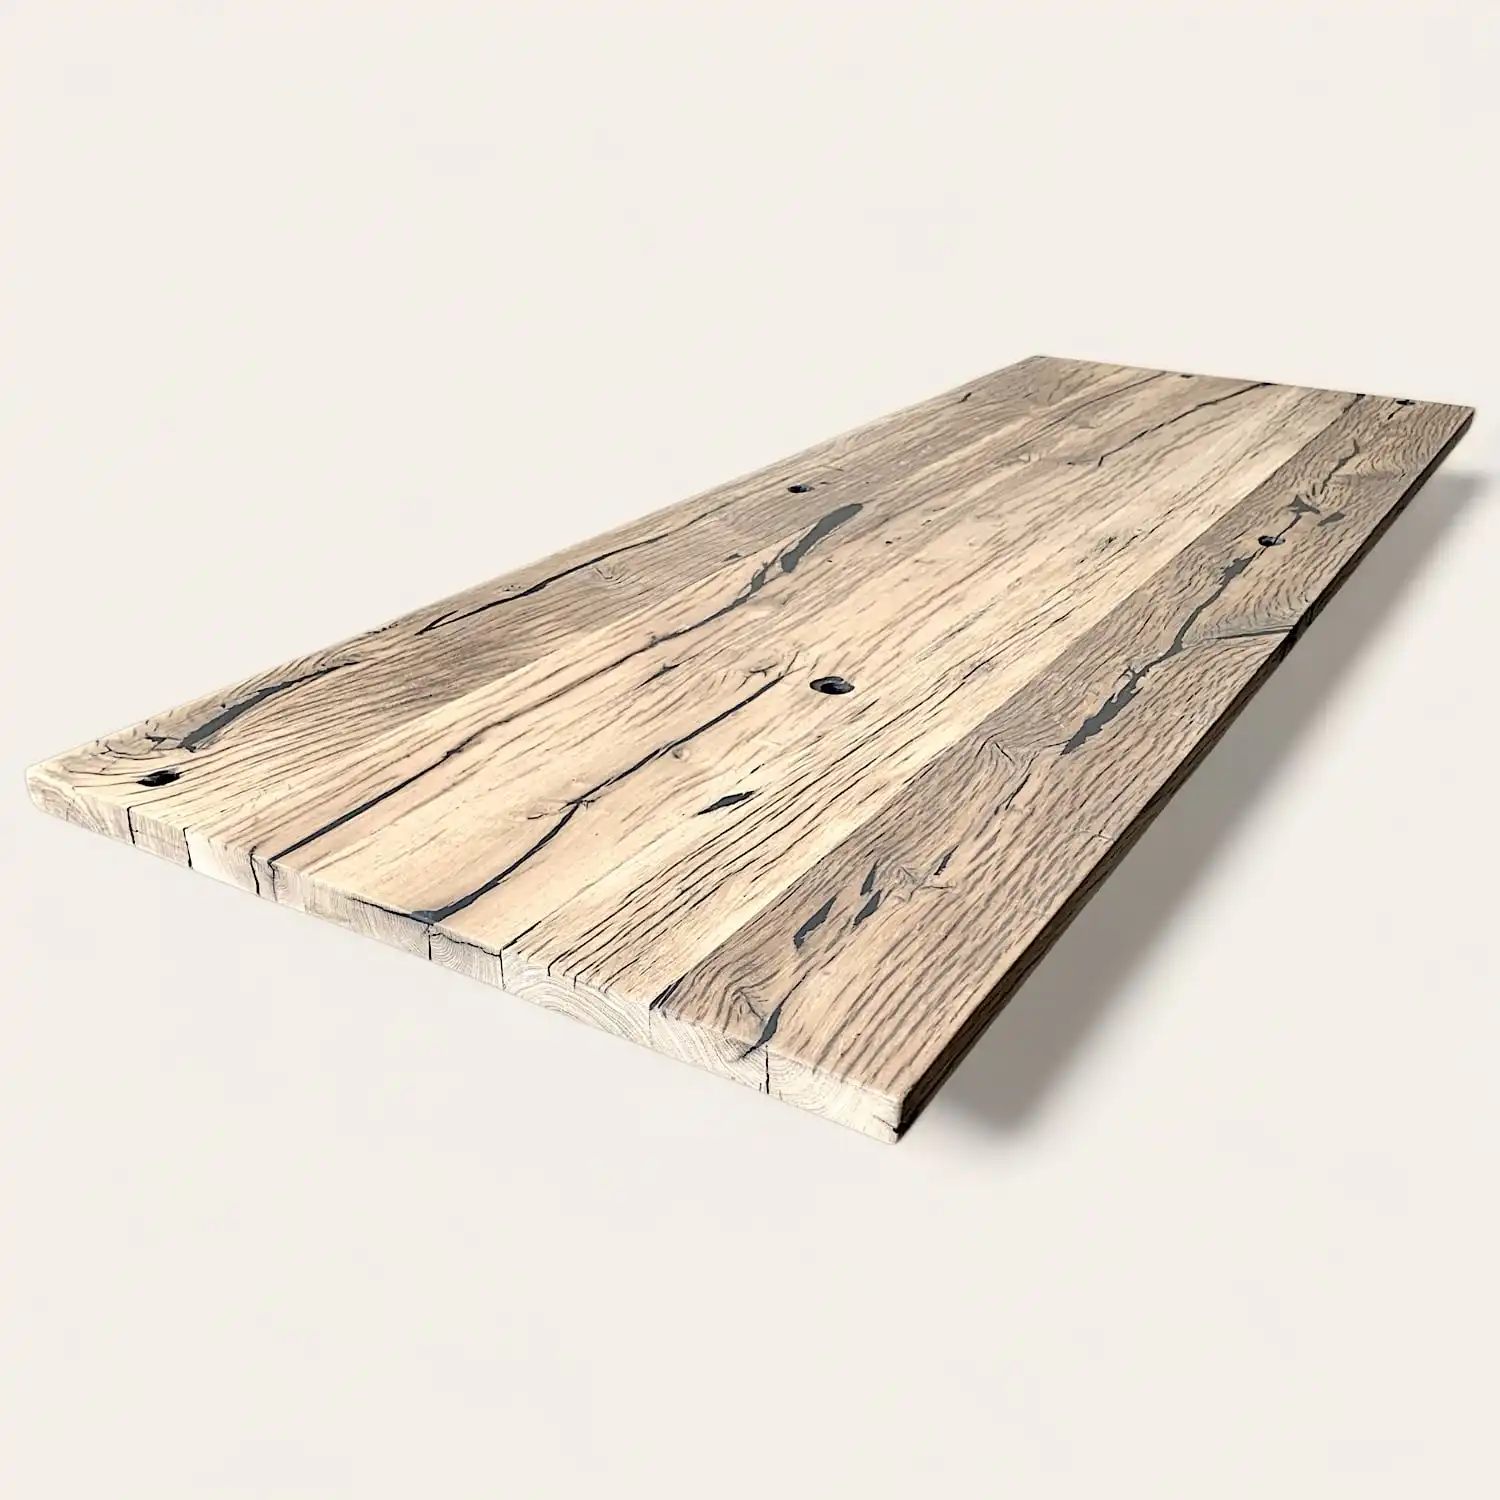  Une image d'une ancienne table en bois massif sur une surface blanche. 